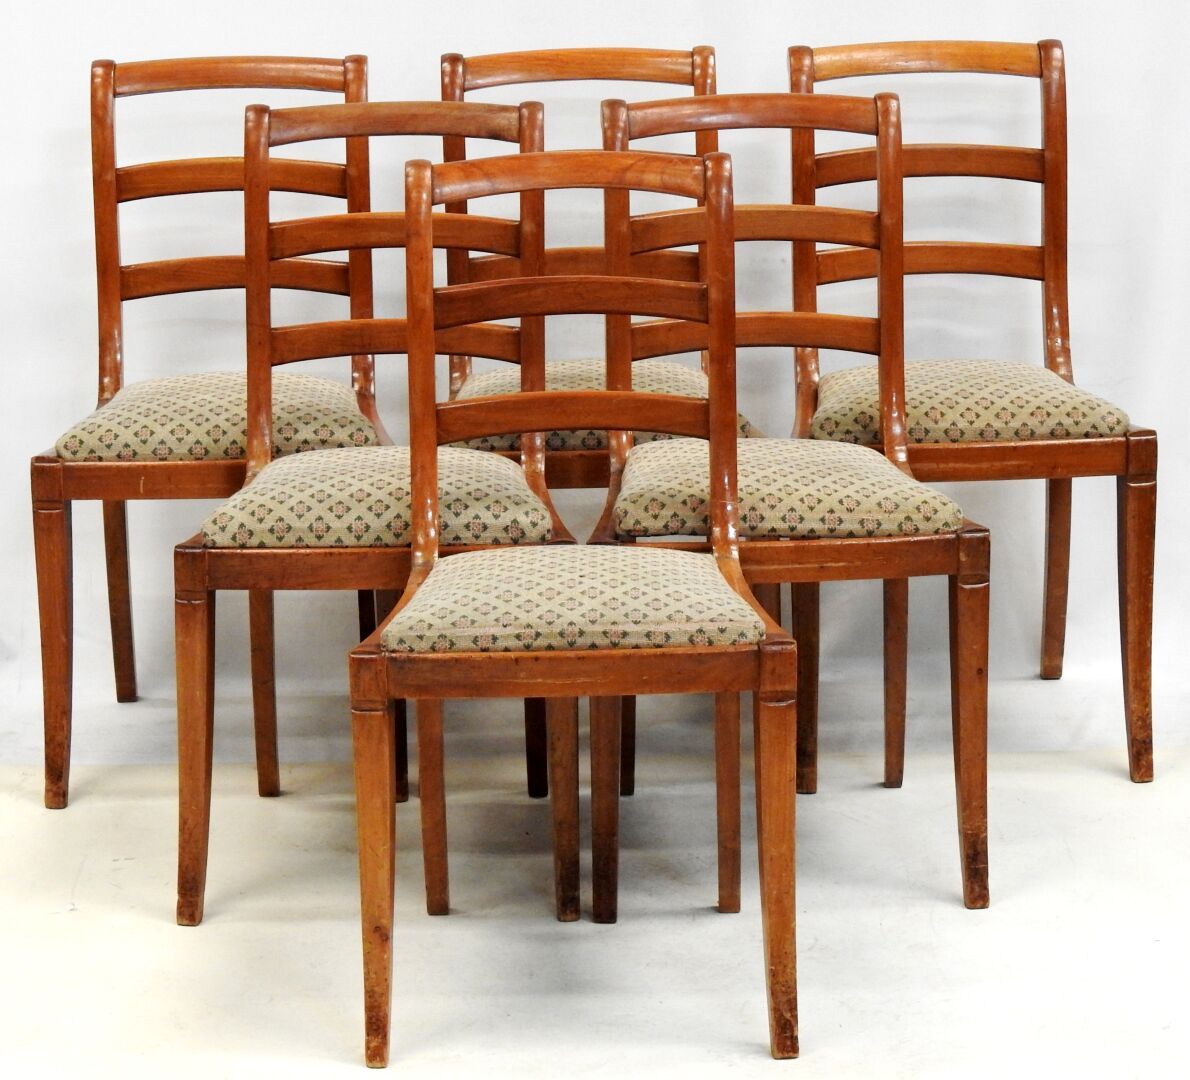 Null Suite di sei sedie in legno naturale con schienale traforato

Usura.